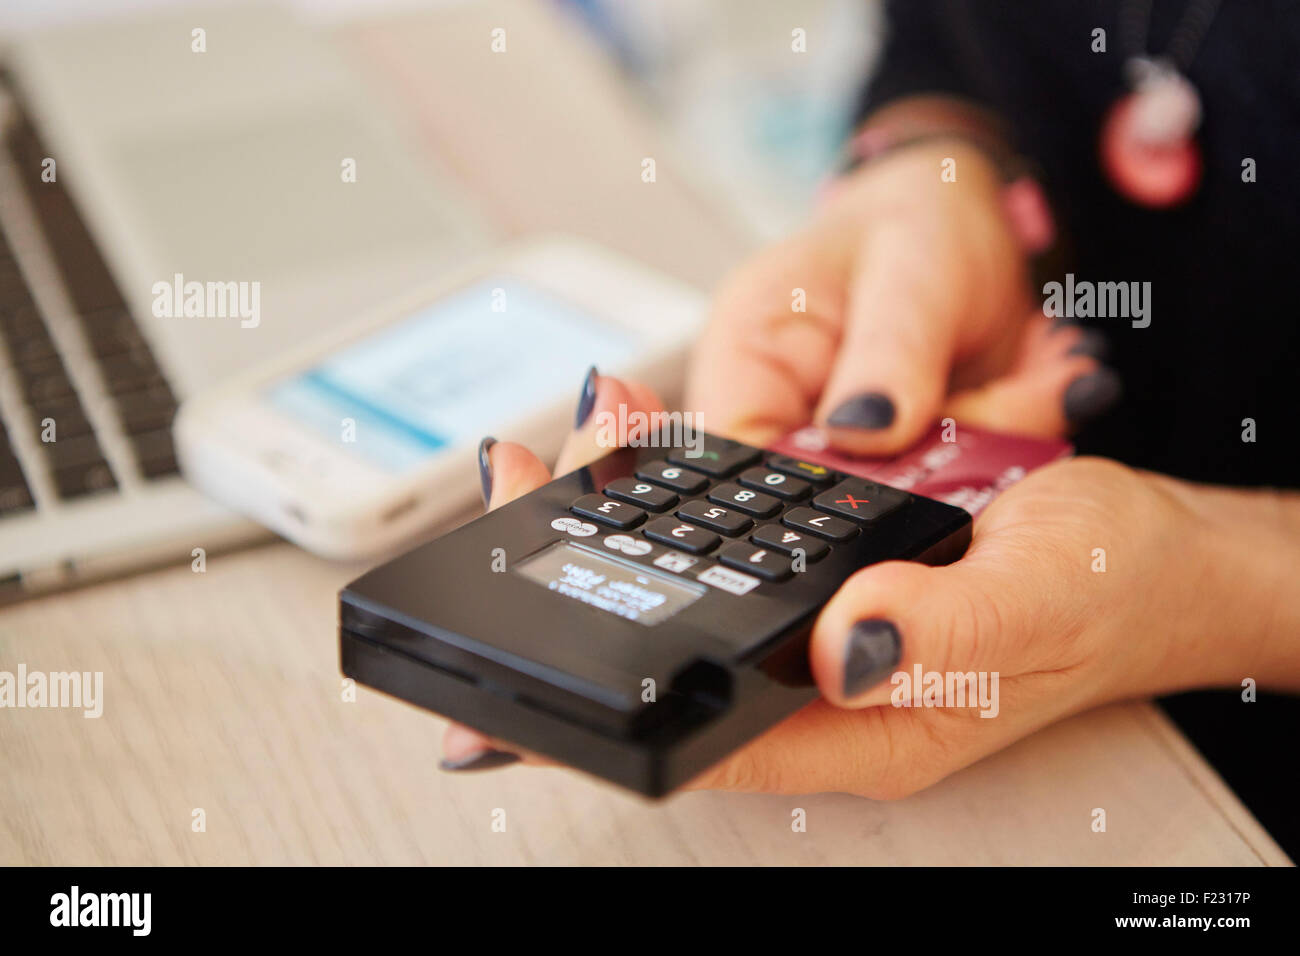 A woman's hands holding un lecteur de carte de crédit, le traitement des paiements ou de payer pour les marchandises. Banque D'Images